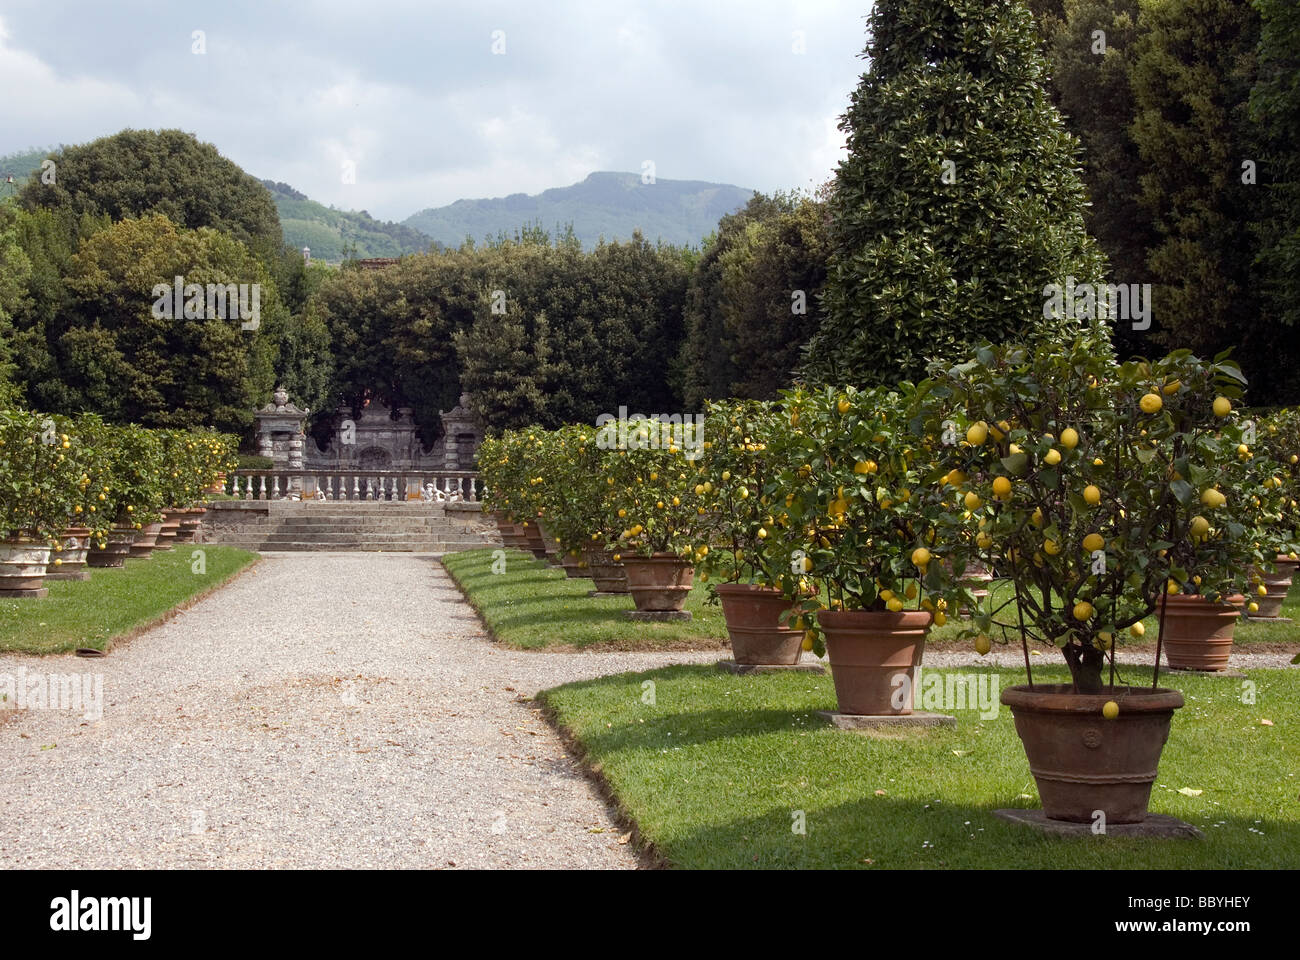 Giardino dei Limoni (giardino di limoni), racchiuso nella vasta foresta nel parco Villa Reale Foto Stock